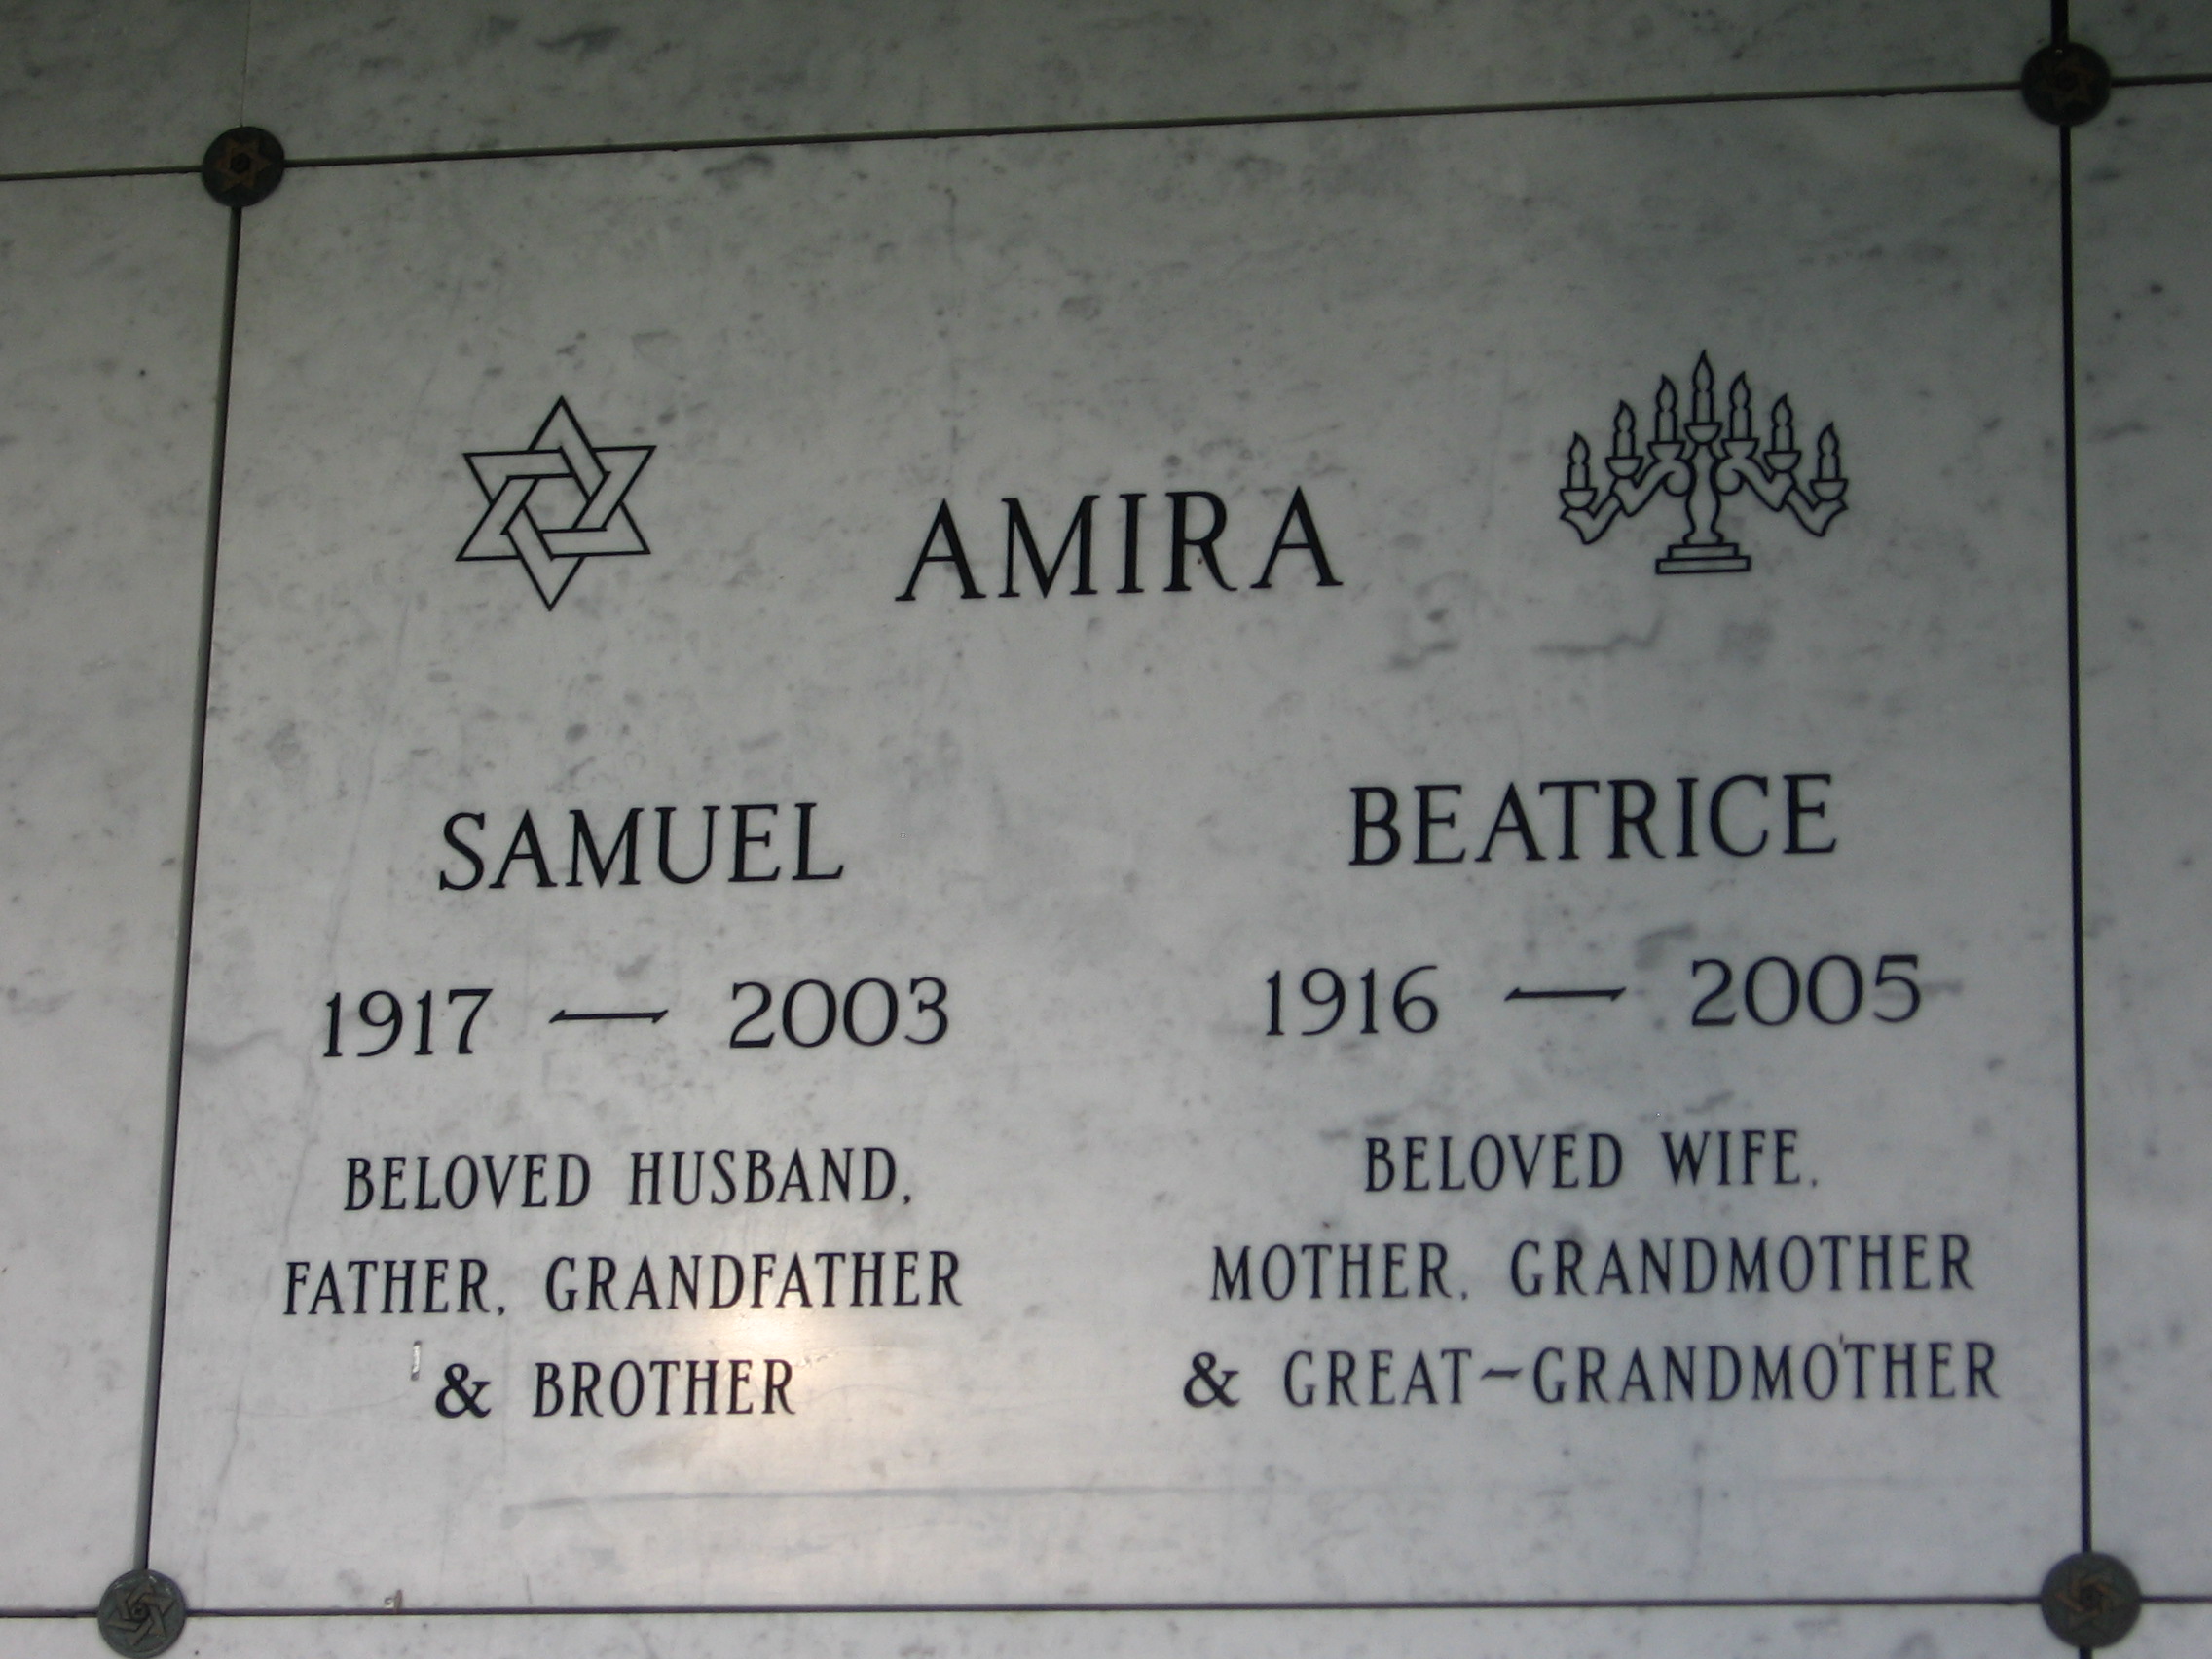 Samuel Amira